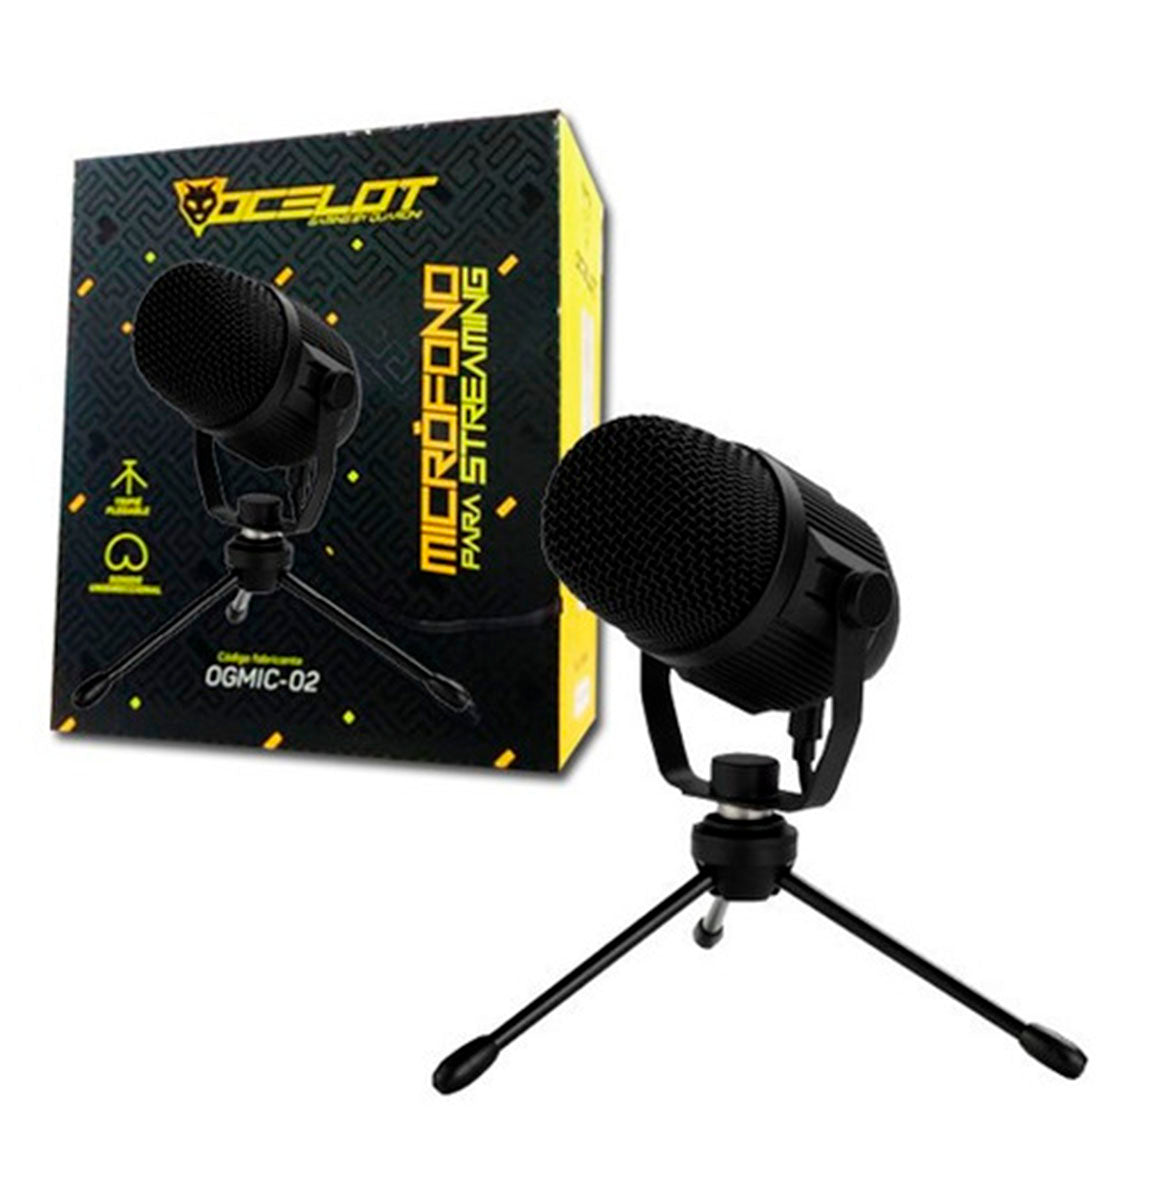 Microfono Ocelot Gaming Para Streaming Usb, Con Base Tipo Tripie Para Escritorio, Color Negro